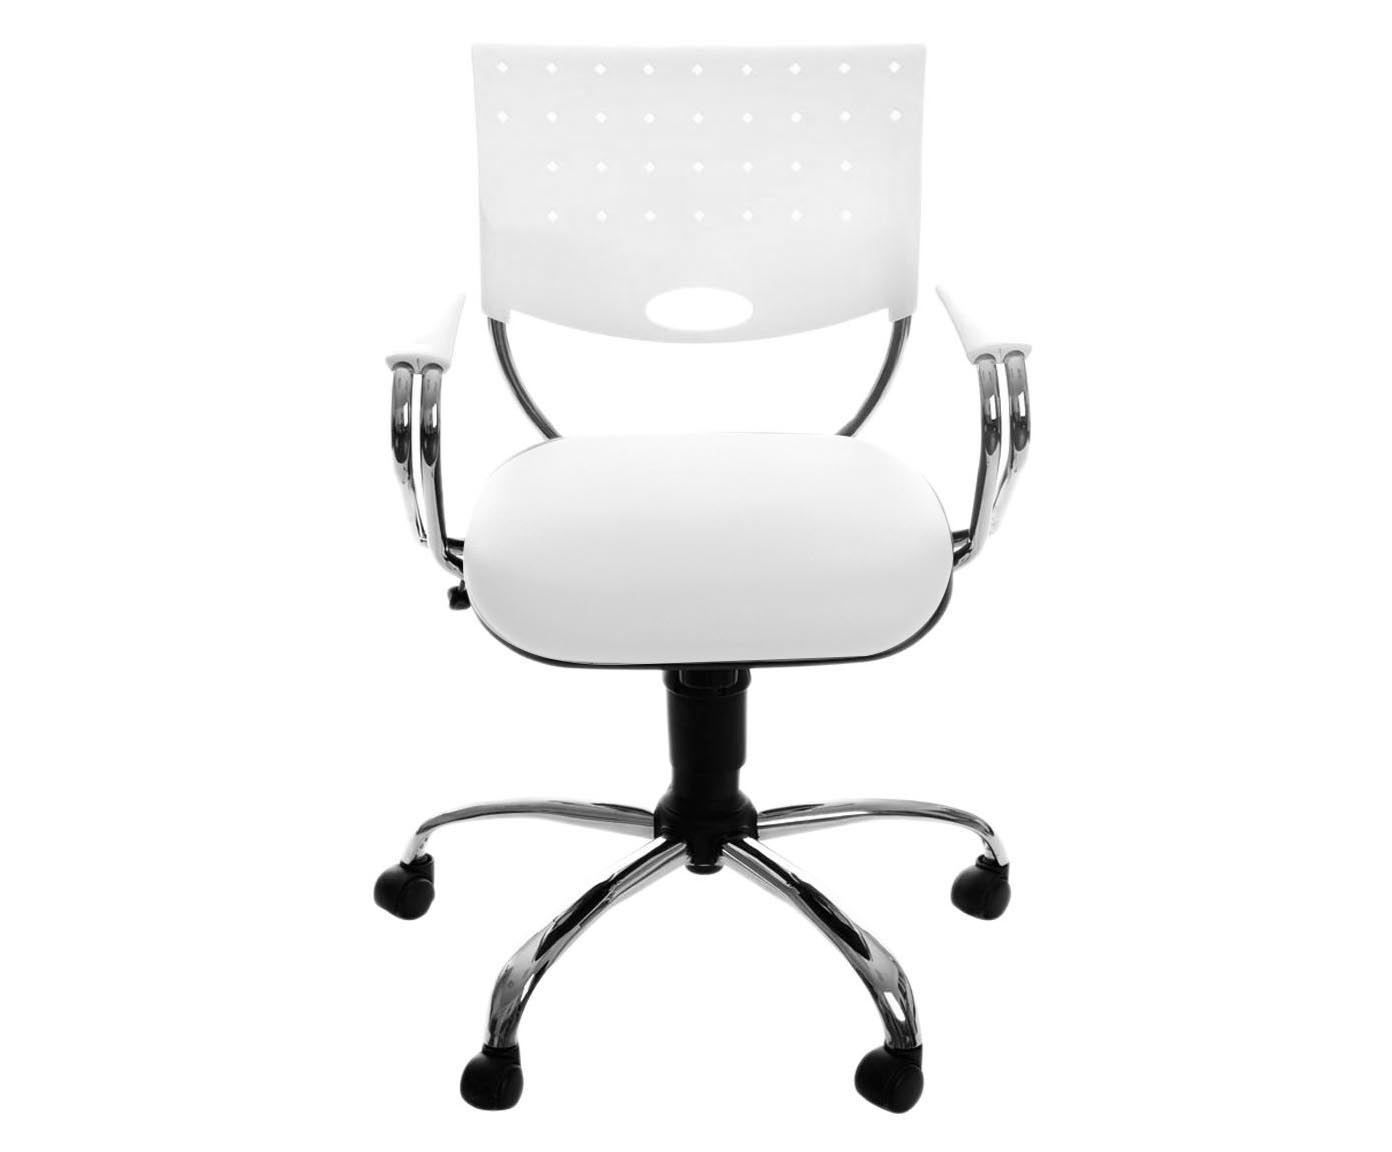 Cadeira fonffibol giratória - union | Westwing.com.br